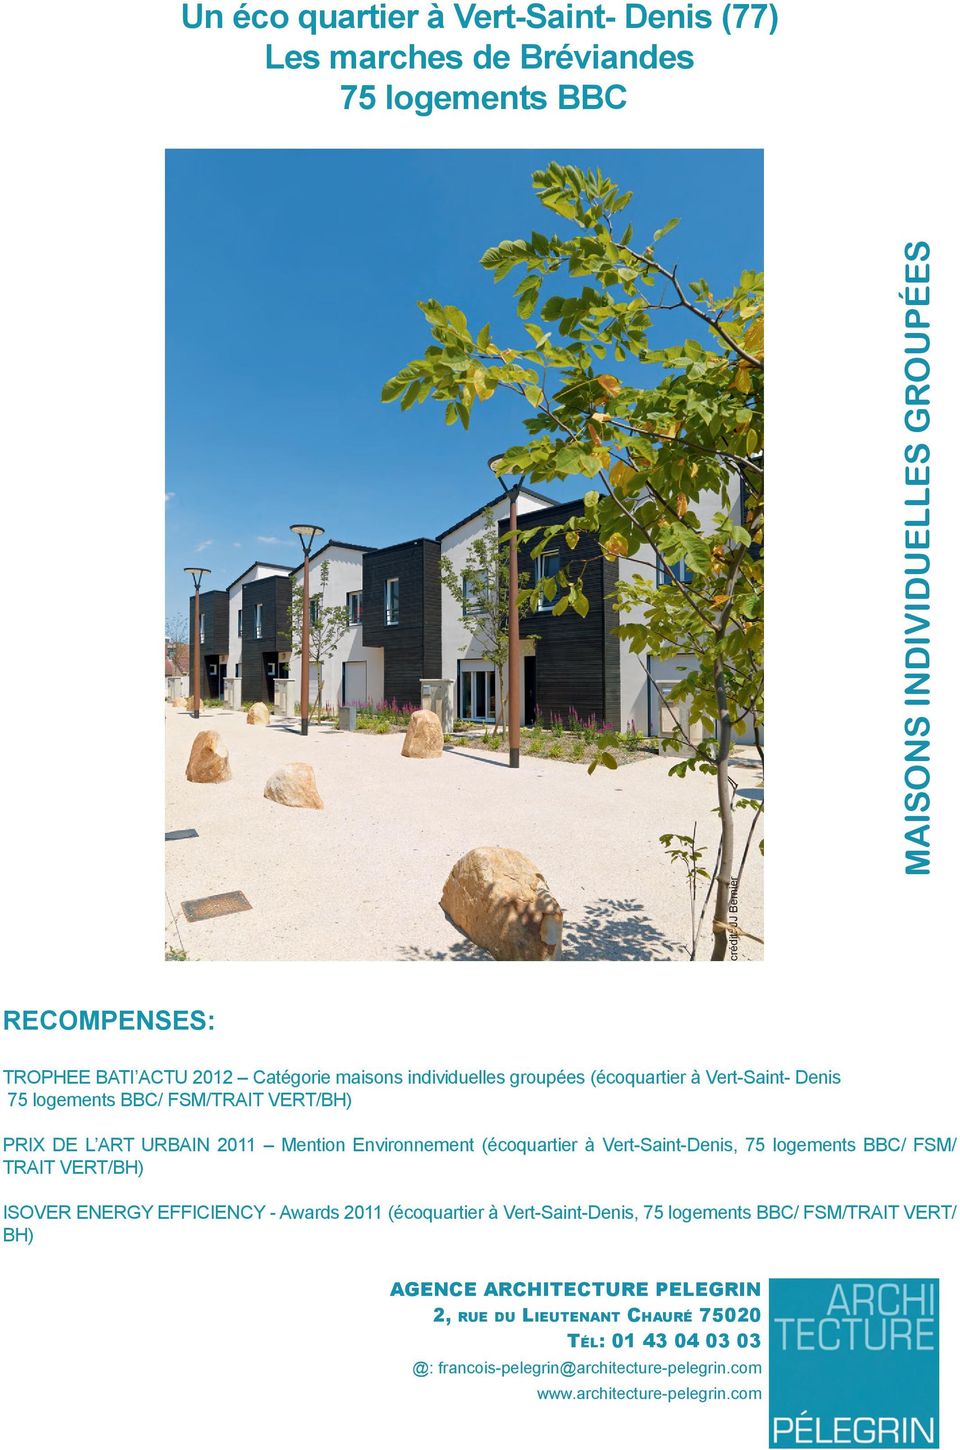 (écoquartier à Vert-Saint-Denis, 75 logements BBC/ FSM/ TRAIT VERT/BH) ISOVER ENERGY EFFICIENCY - Awards 2011 (écoquartier à Vert-Saint-Denis, 75 logements BBC/